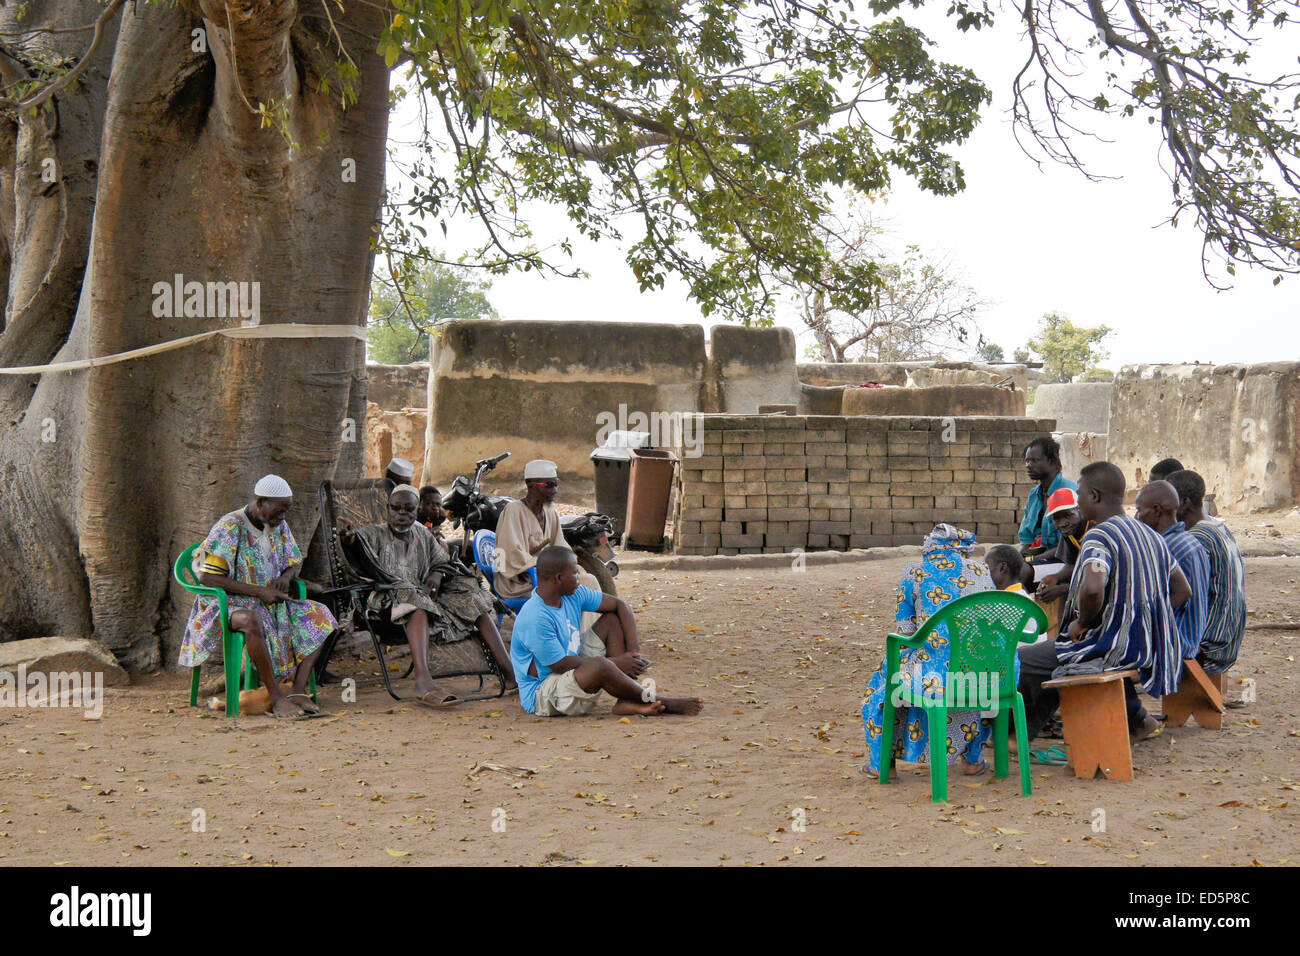 Talensi chef, les anciens, et les villageois d'organiser une réunion sous un grand arbre ficus, Tongo, Ghana Banque D'Images